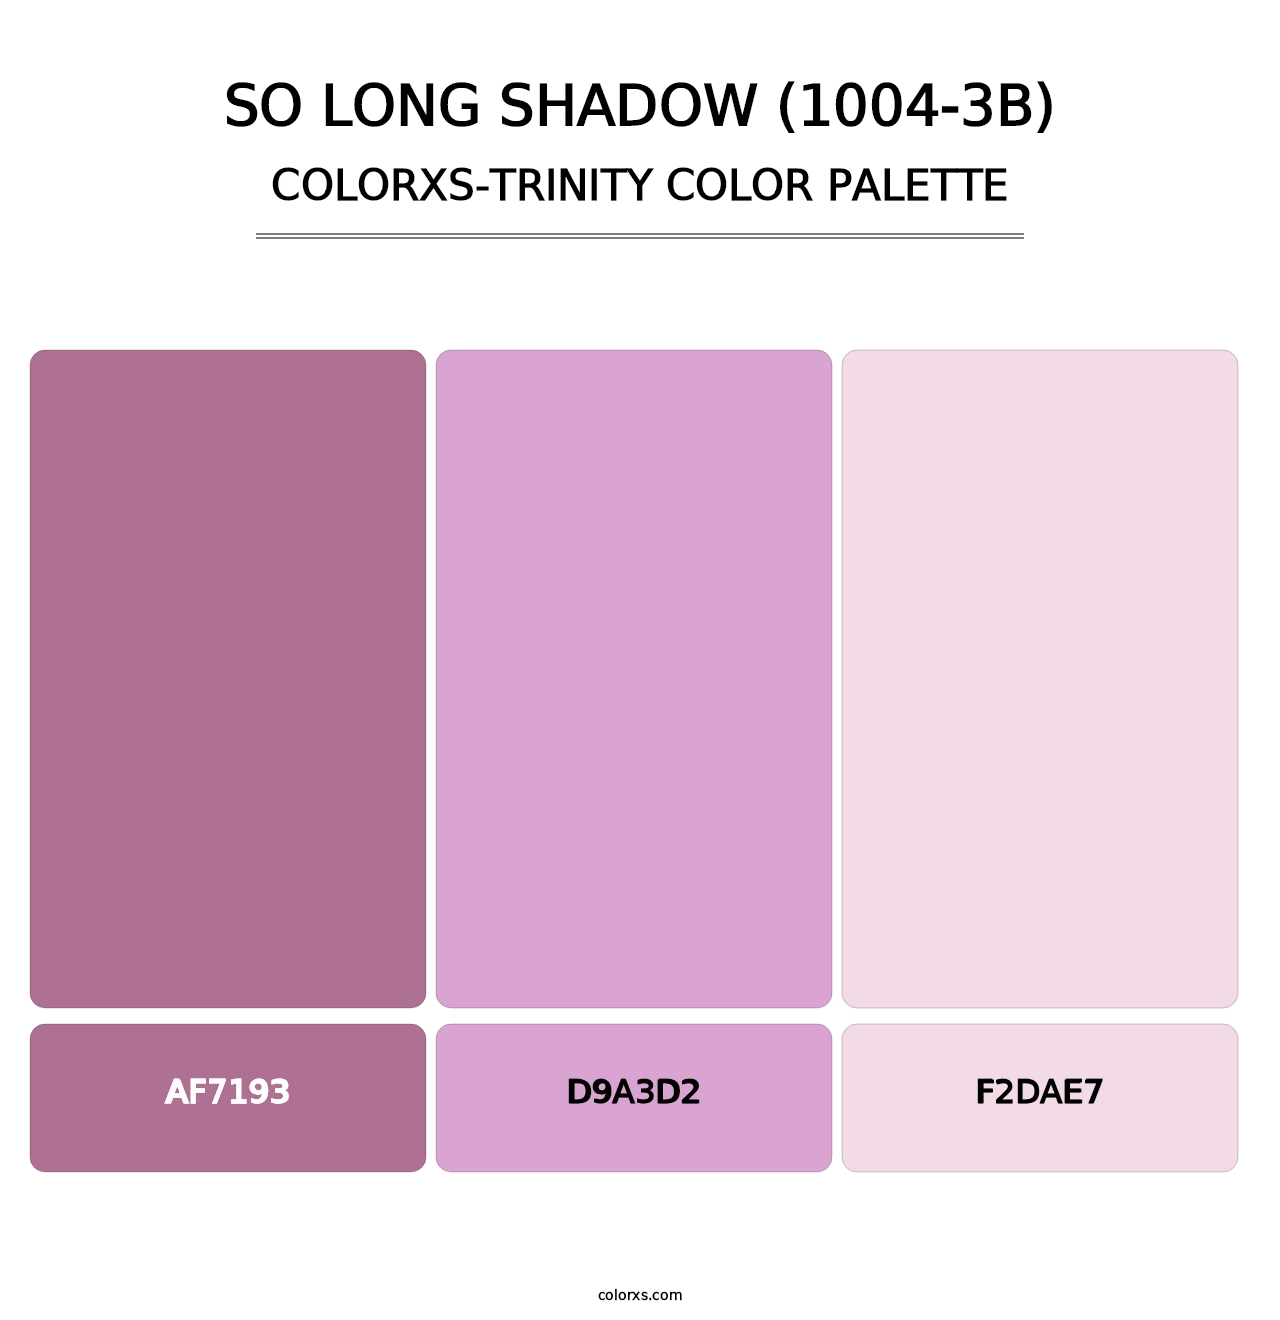 So Long Shadow (1004-3B) - Colorxs Trinity Palette